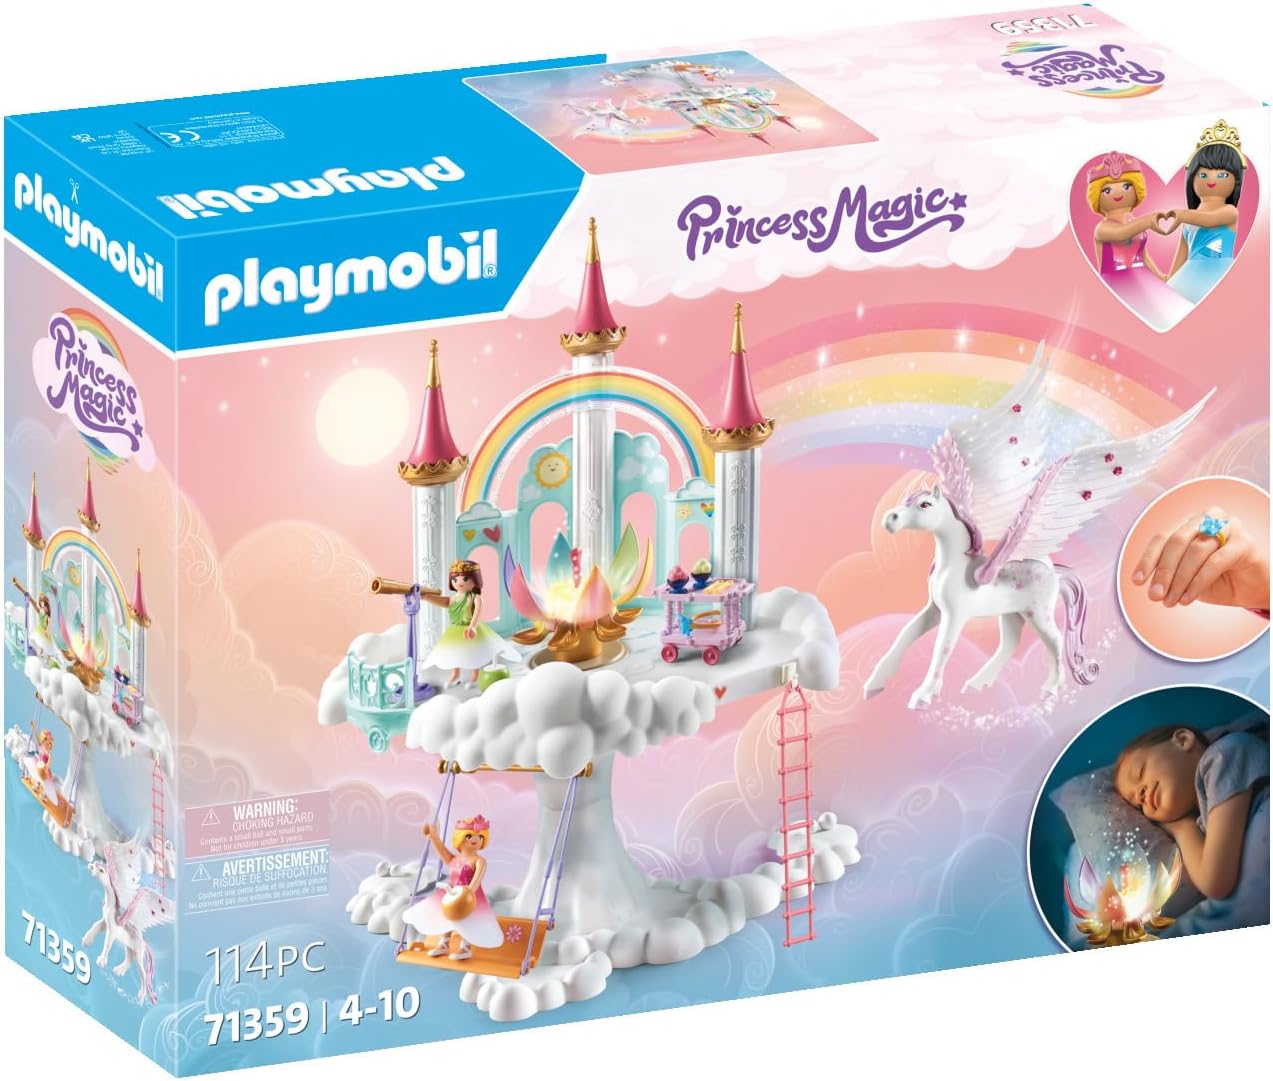 Playmobil 71359 Princess Magic: Rainbow Castle in the Clouds, um mundo mágico de conto de fadas com uma flor de arco-íris brilhante, pégaso, dramatização divertida e imaginativa, conjuntos de jogos adequados para crianças de 4 anos ou mais